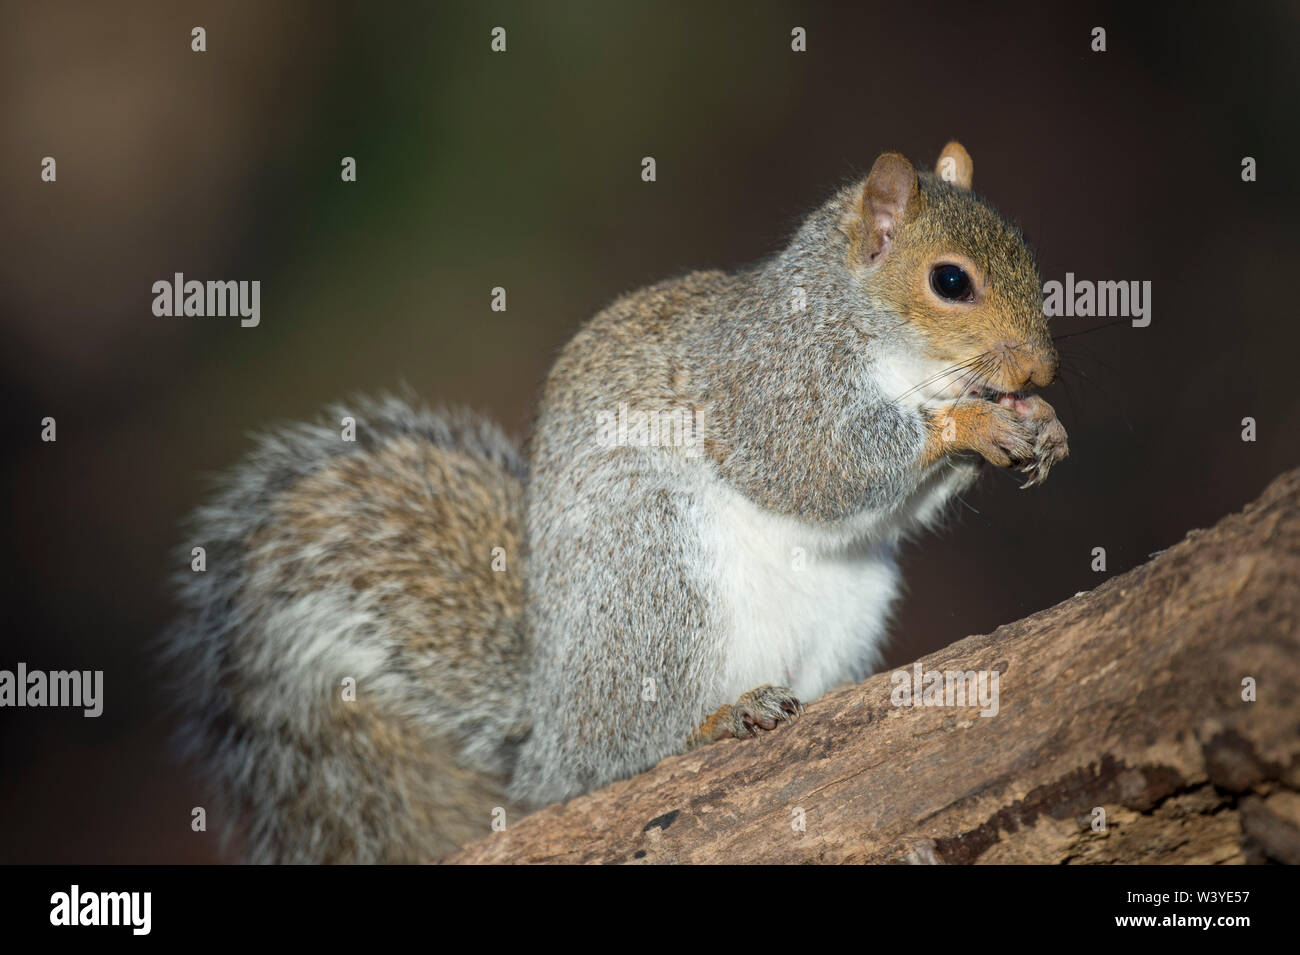 Un Squirred gris alimentaire tient dans ses pattes alors qu'il mange bien que perché sur un journal au soleil avec un fond sombre. Banque D'Images